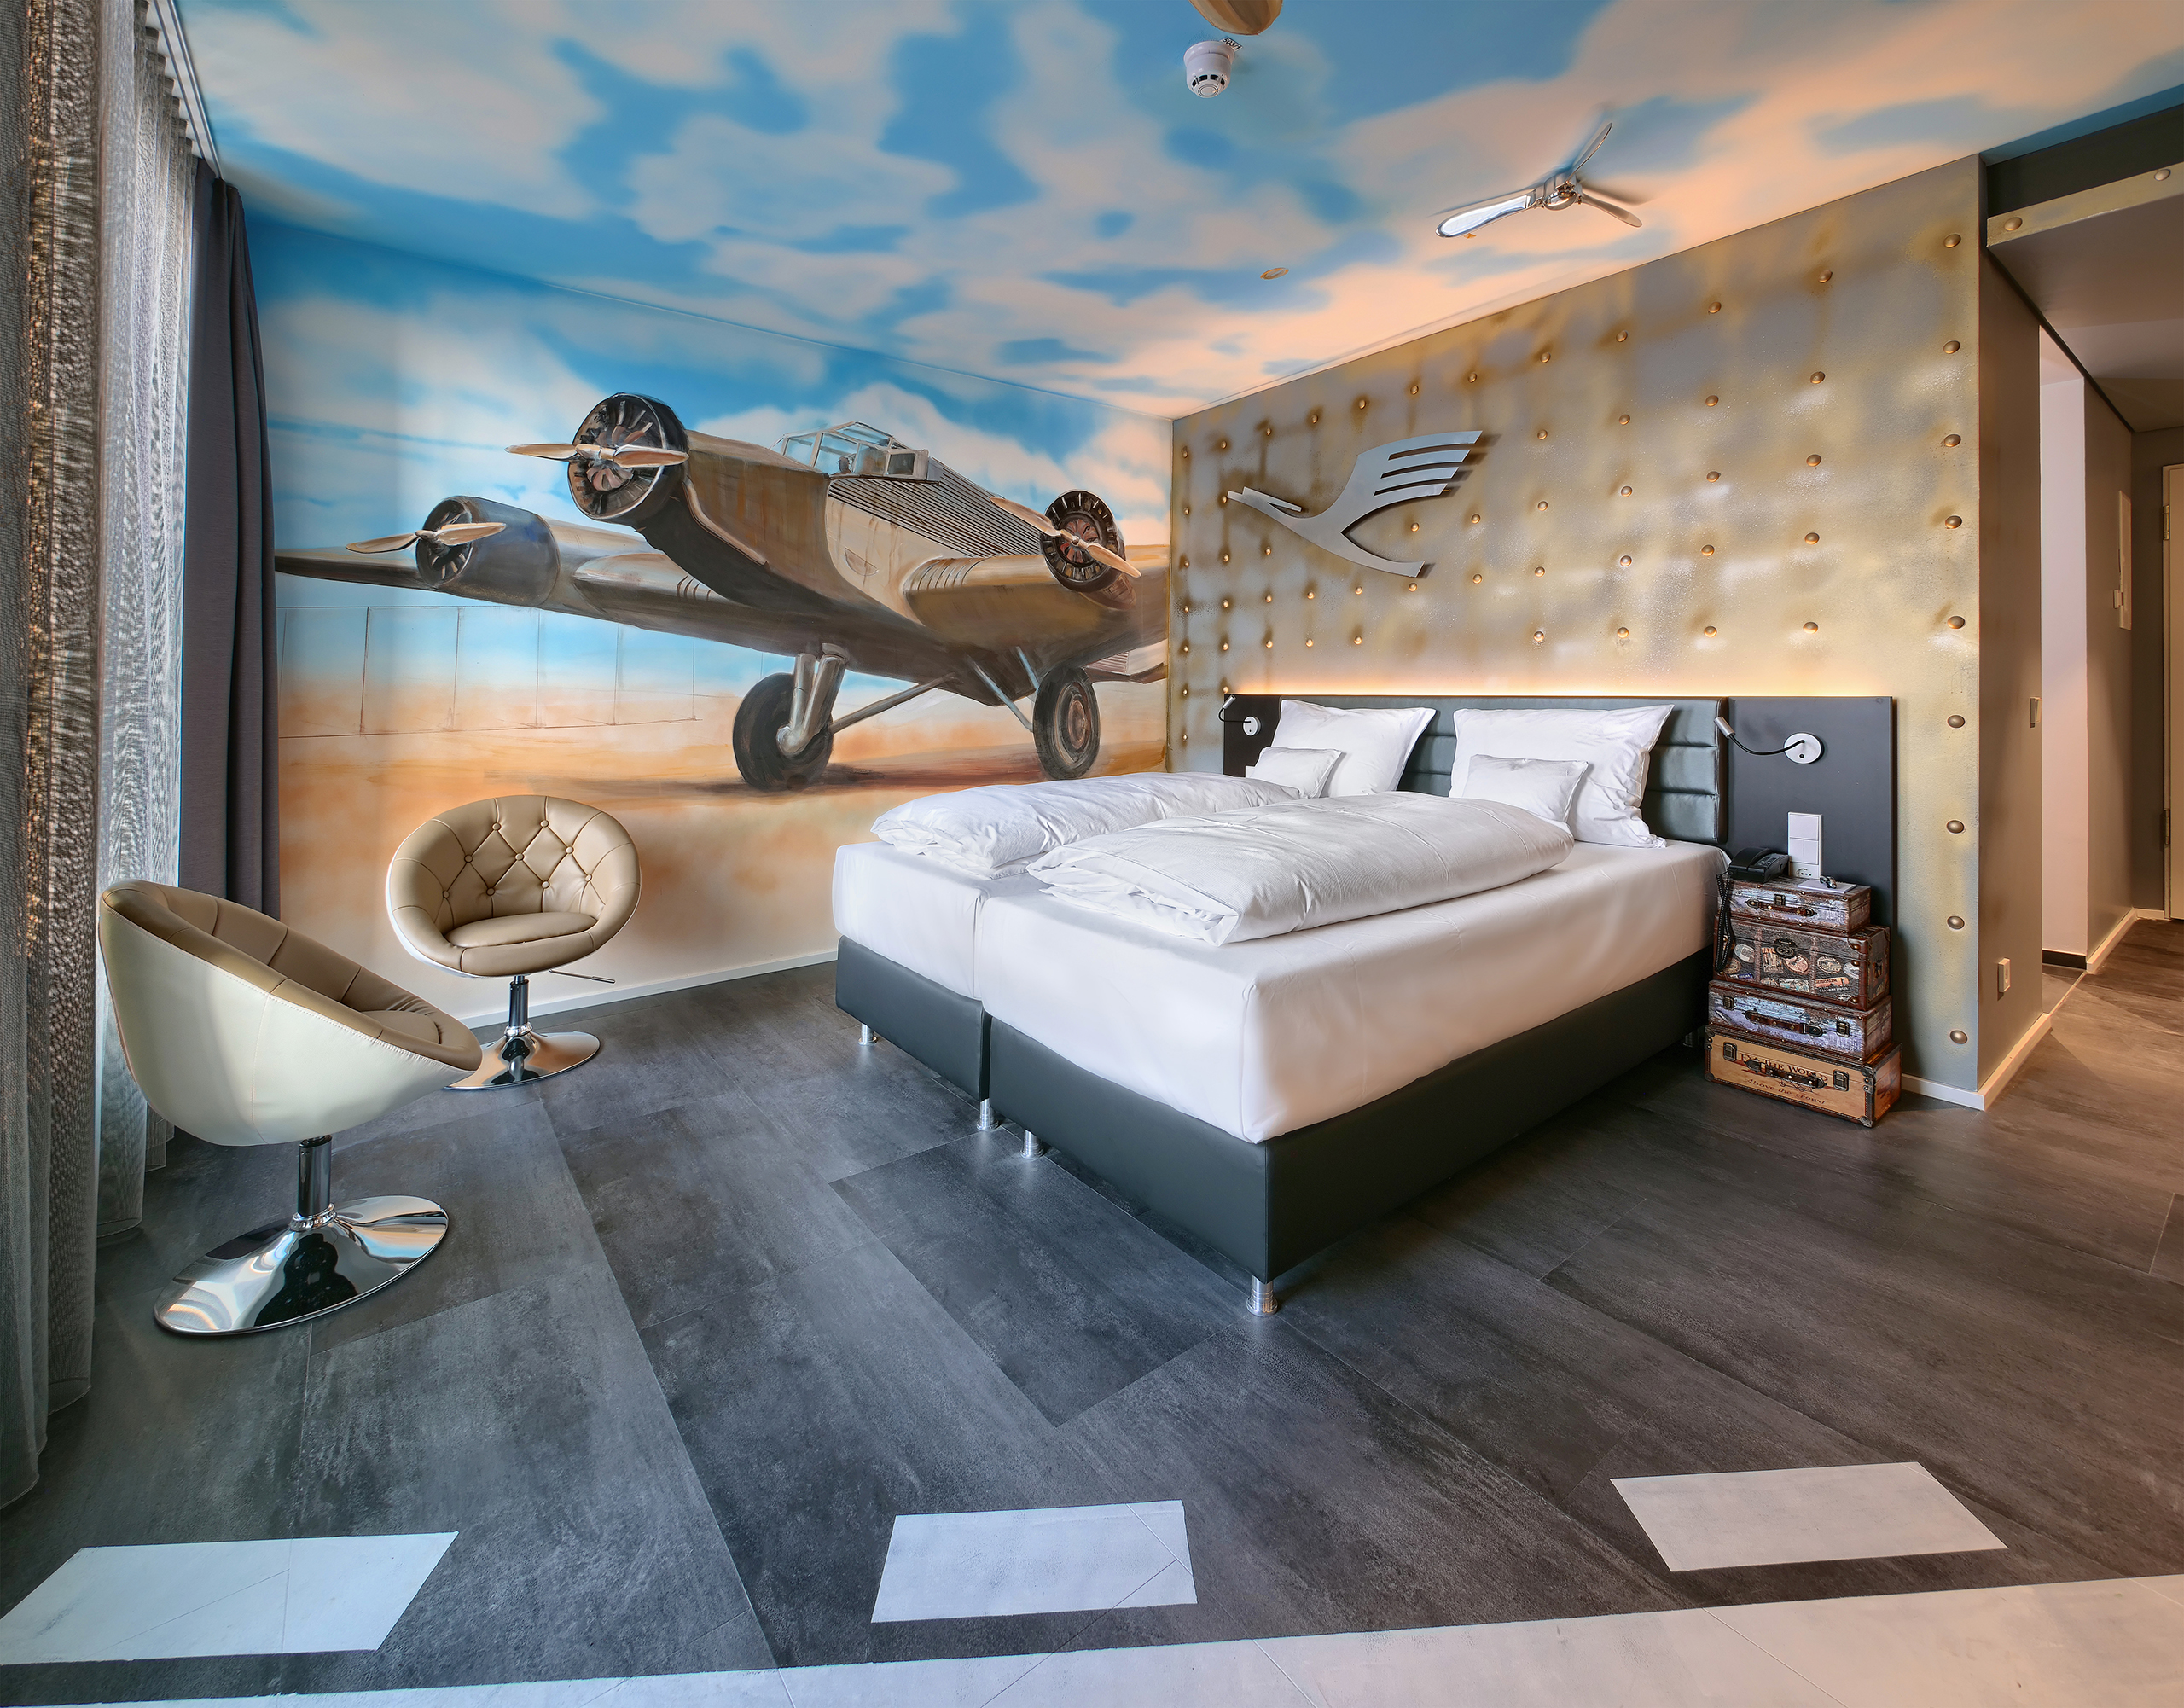 Gemütliches Doppelbett und zwei runde Sessel im Airfield-Themenzimmer im V8 Hotel mit einer Motivtapete, die ein Propellerflugzeug zeigt